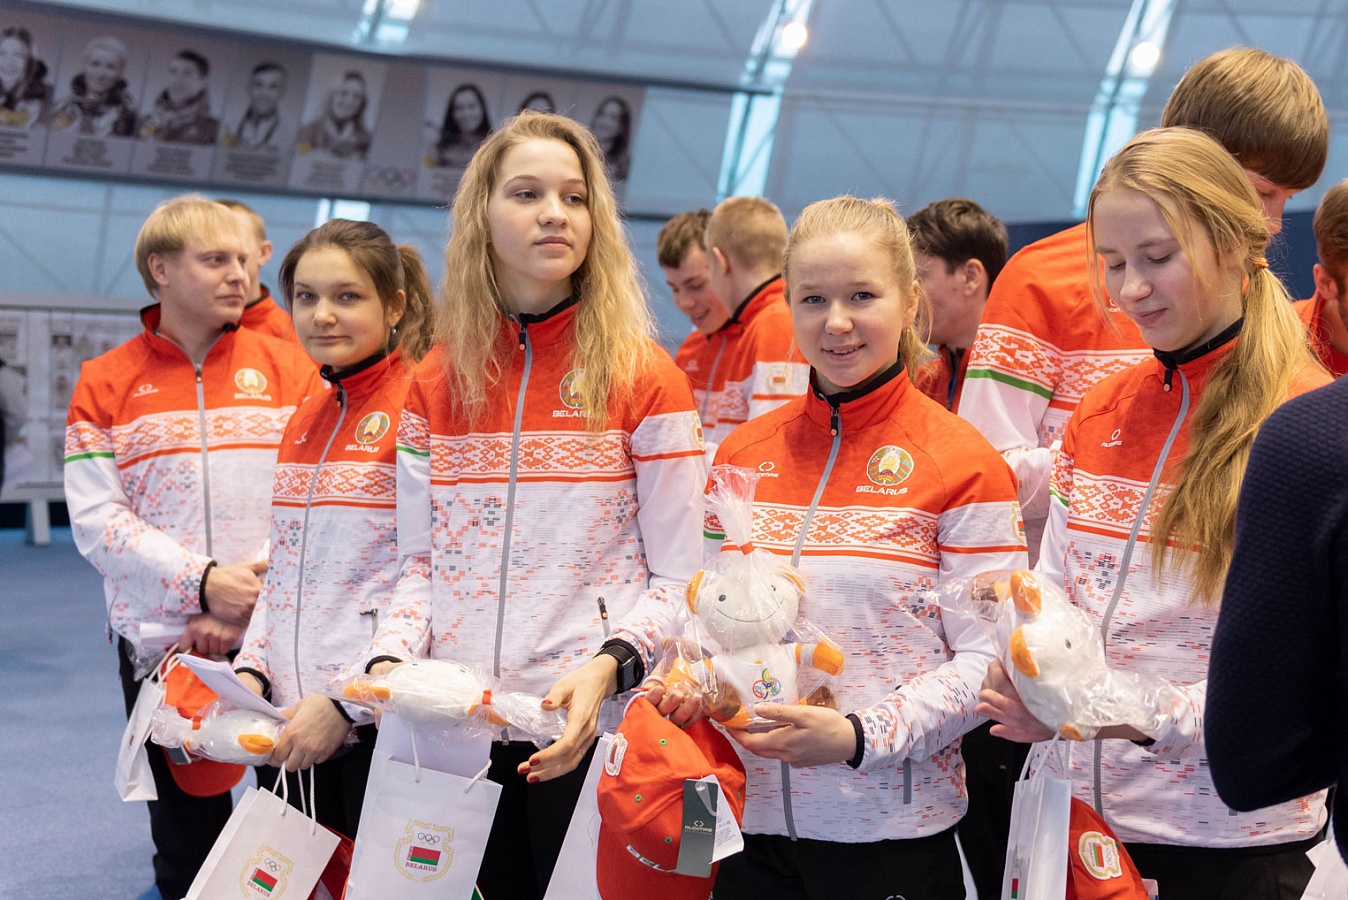 Каждый участник белорусской олимпийской делегации получил в подарок мягкую игрушку Агрика с логотипом будущих соревнований, а также другие сувениры от Национального олимпийского комитета и его партнеров